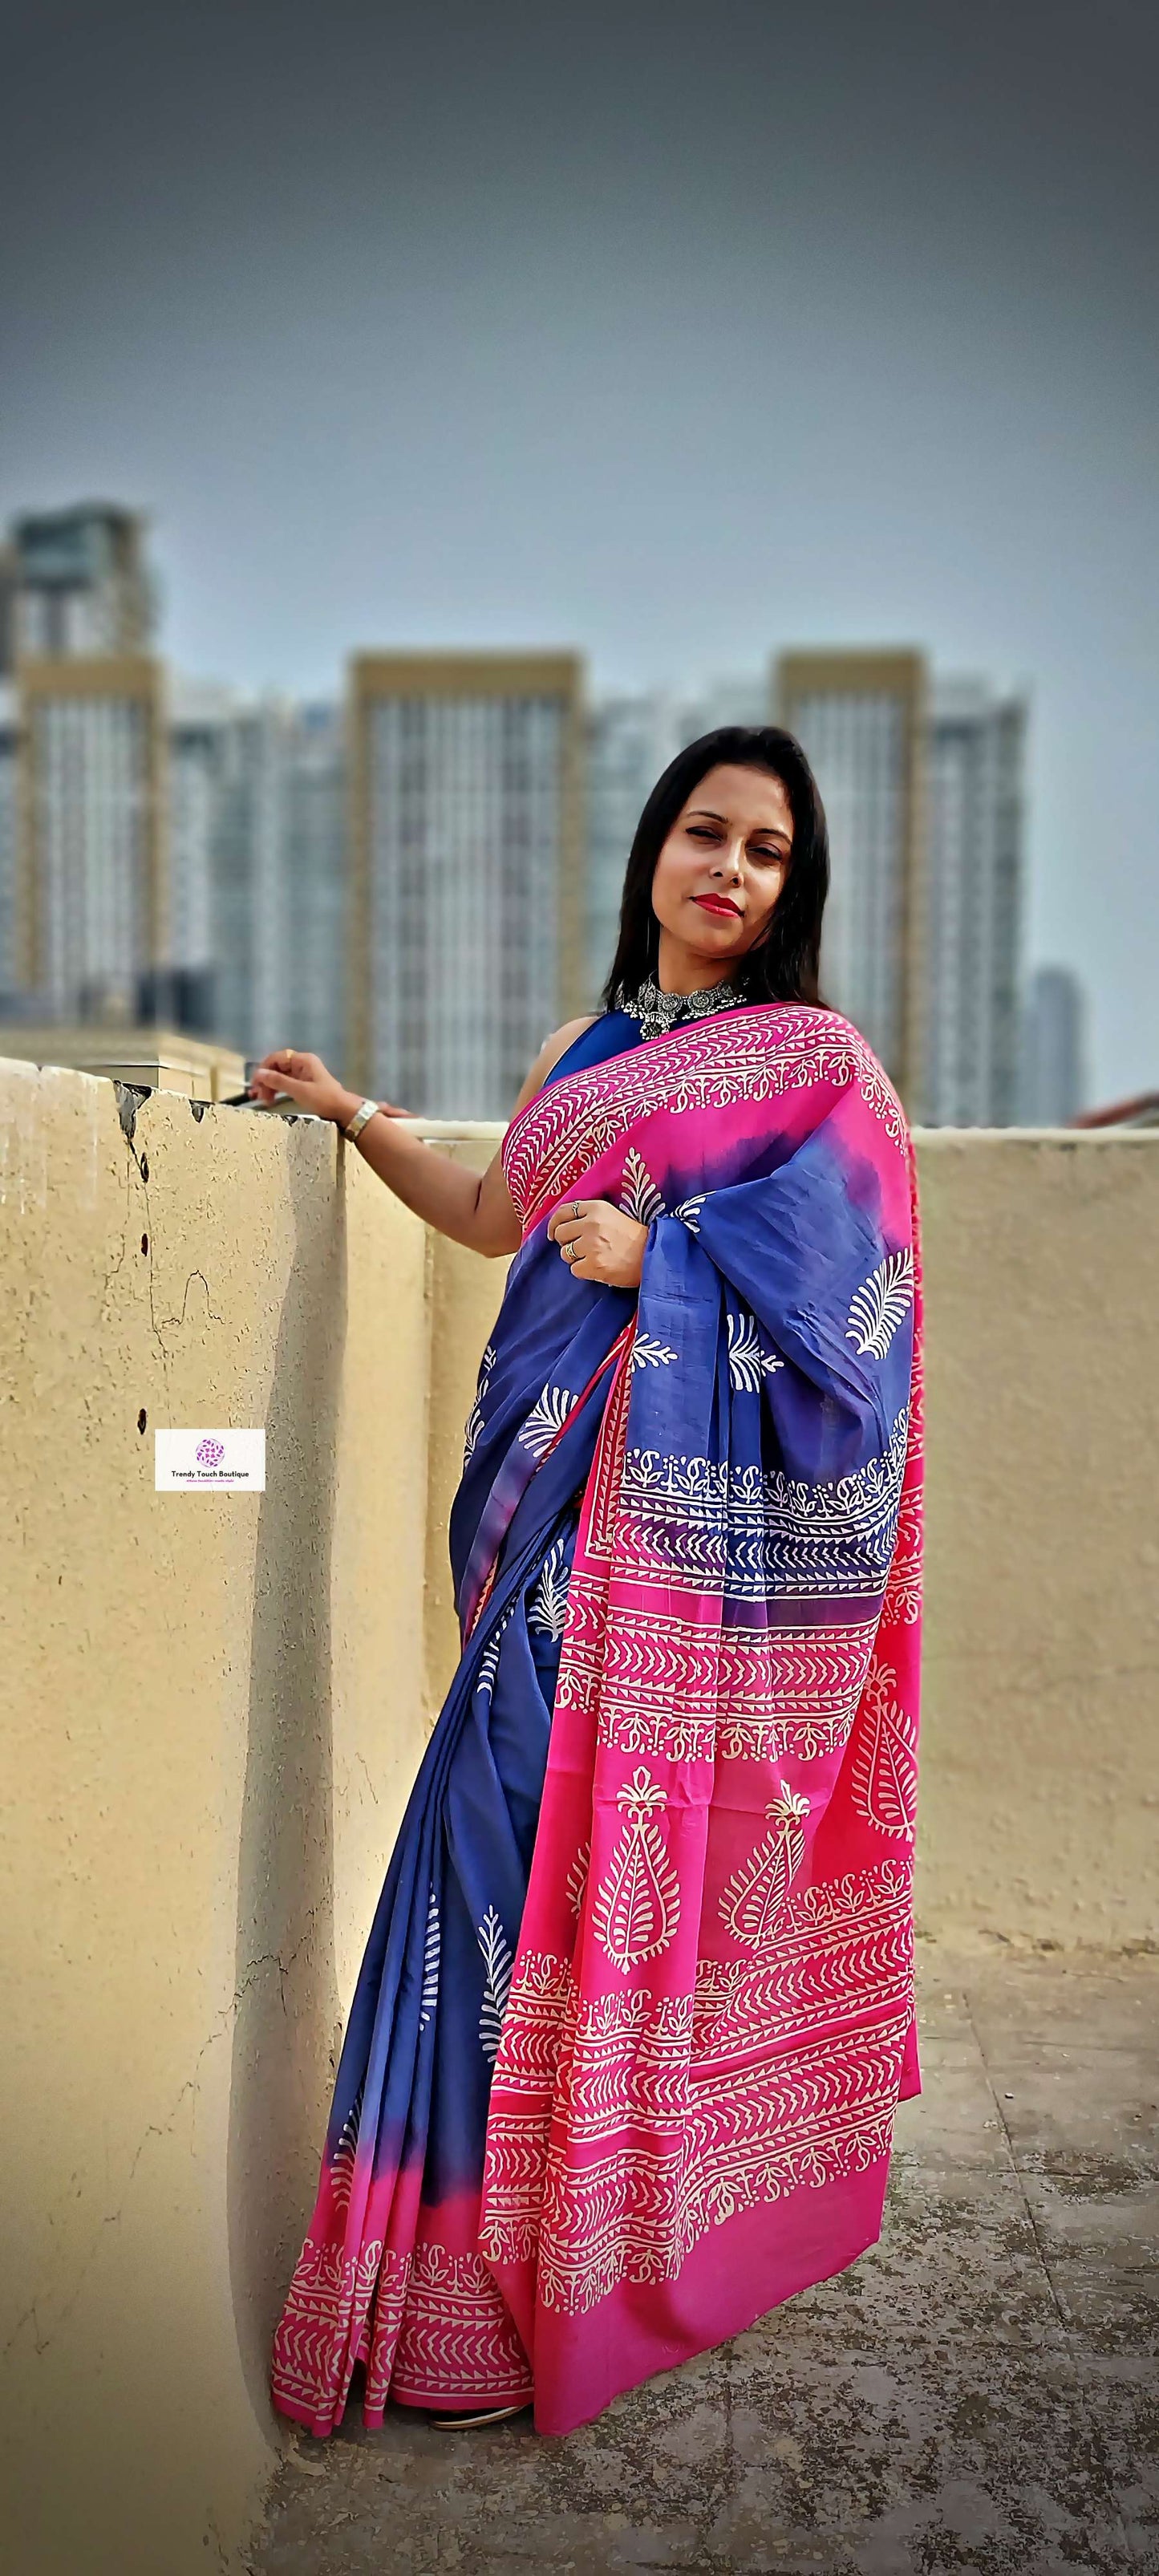 handblock print mulcotton saree best price 1799 online with blouse piece